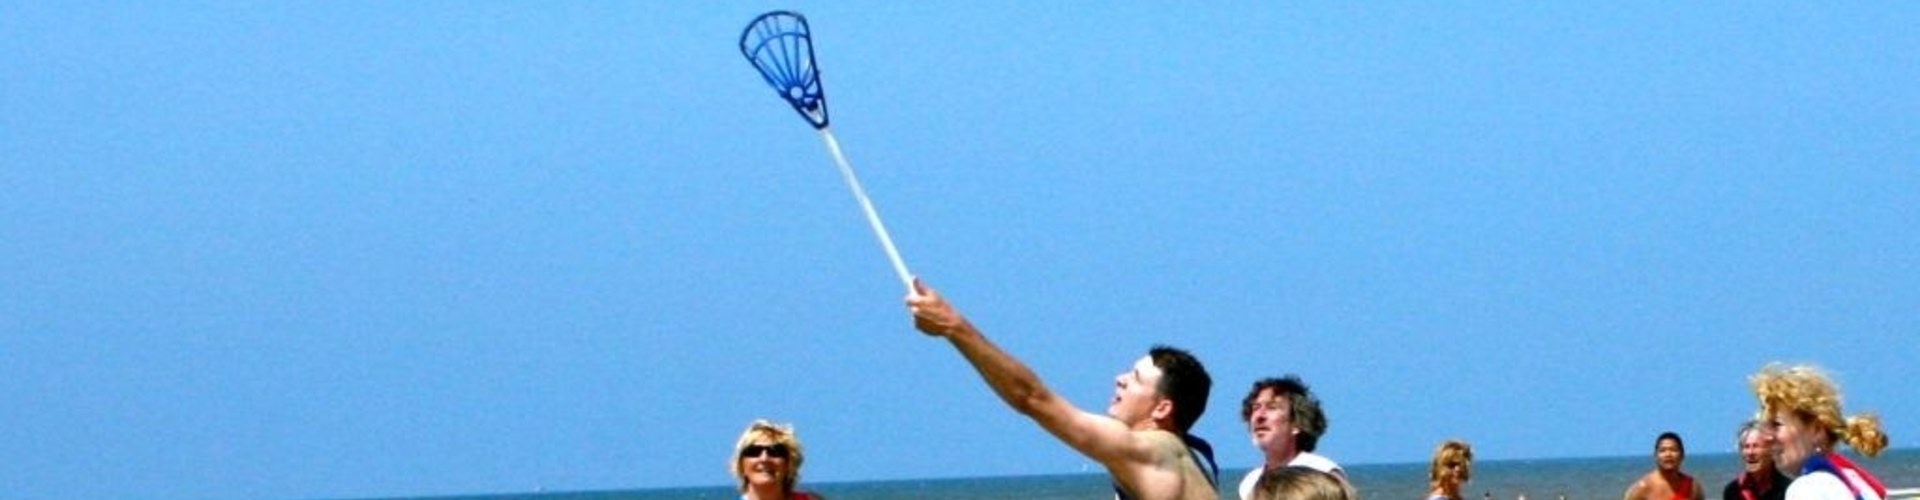 Beach lacrosse in actie tijdens een bedrijfsuitje op het strand.